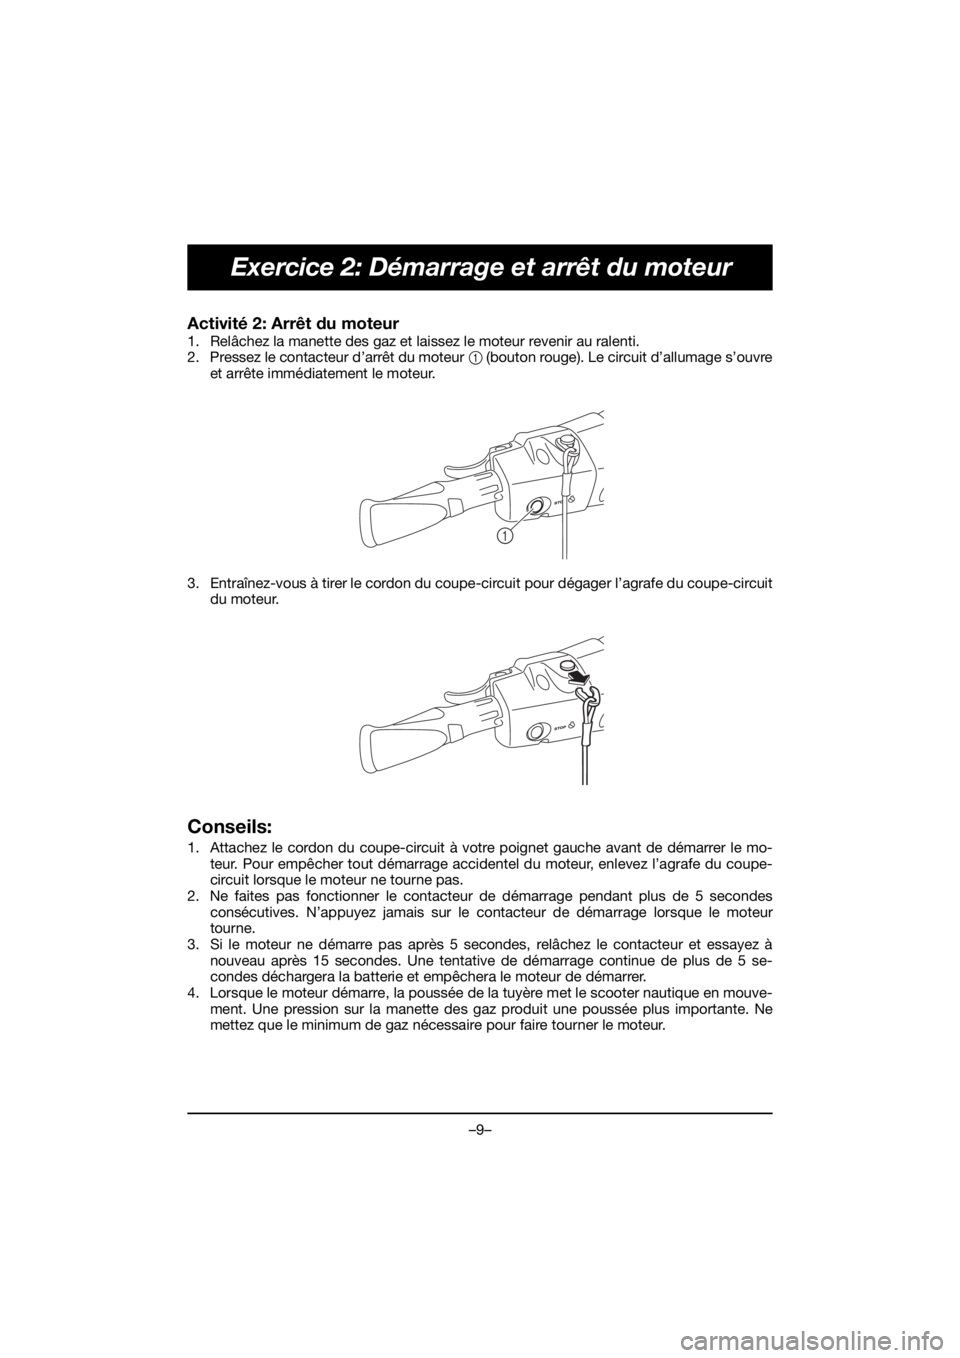 YAMAHA VX CRUISER HO 2020  Manual de utilização (in Portuguese) –9–
Exercice 2: Démarrage et arrêt du moteur
Activité 2: Arrêt du moteur 
1. Relâchez la manette des gaz et laissez le moteur revenir au ralenti. 
2. Pressez le contacteur d’arrêt du moteu